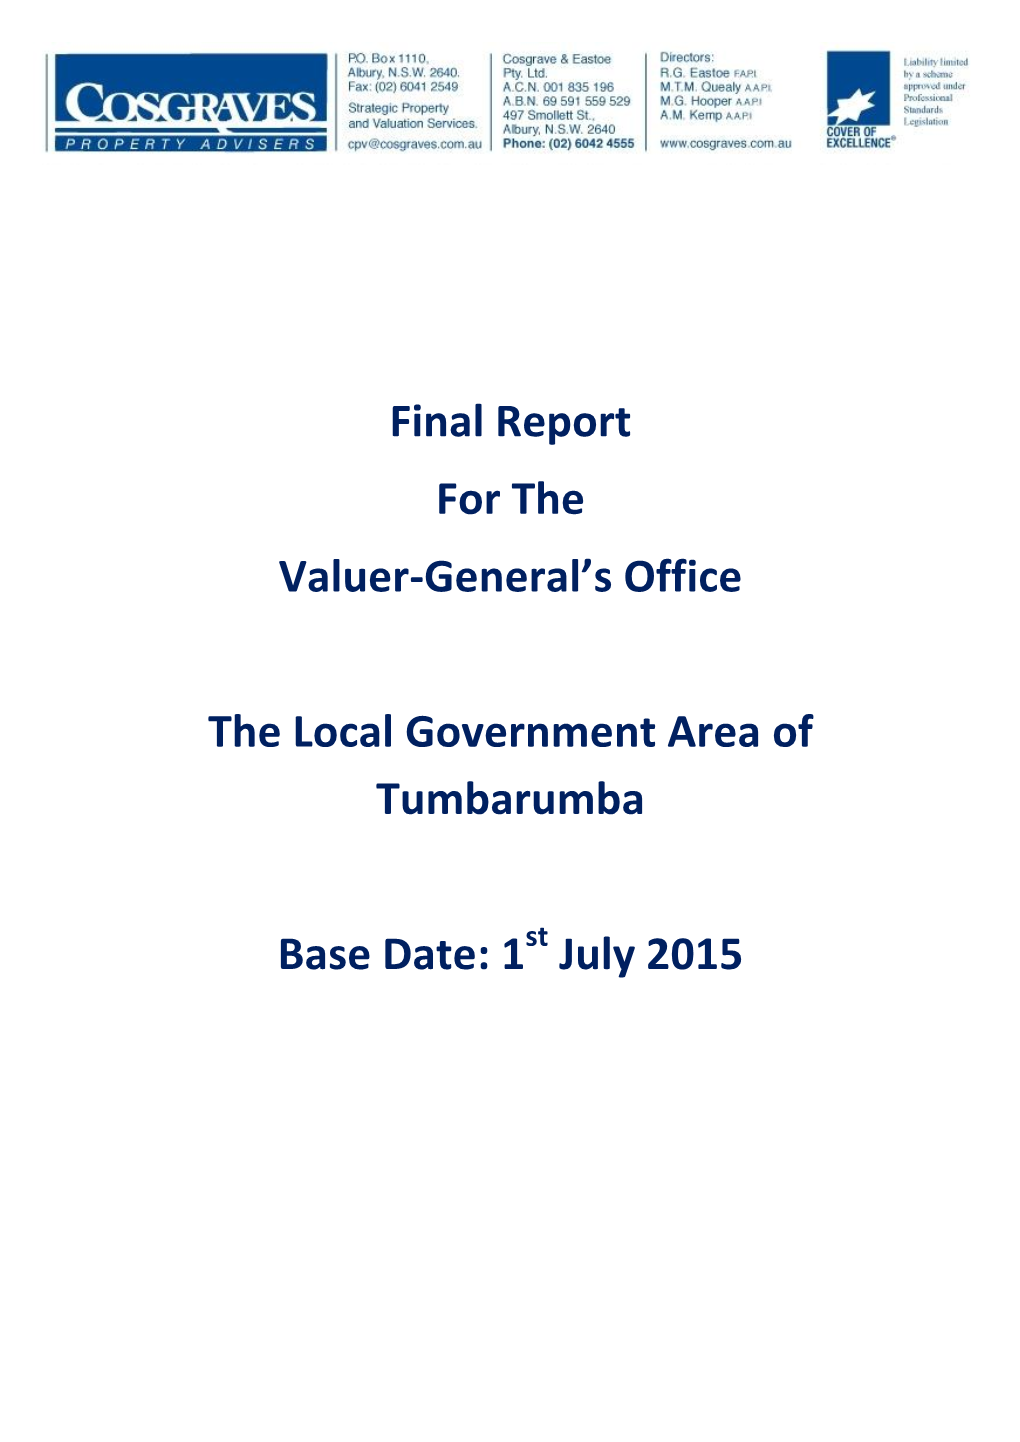 Tumbarumba Final Report 2015